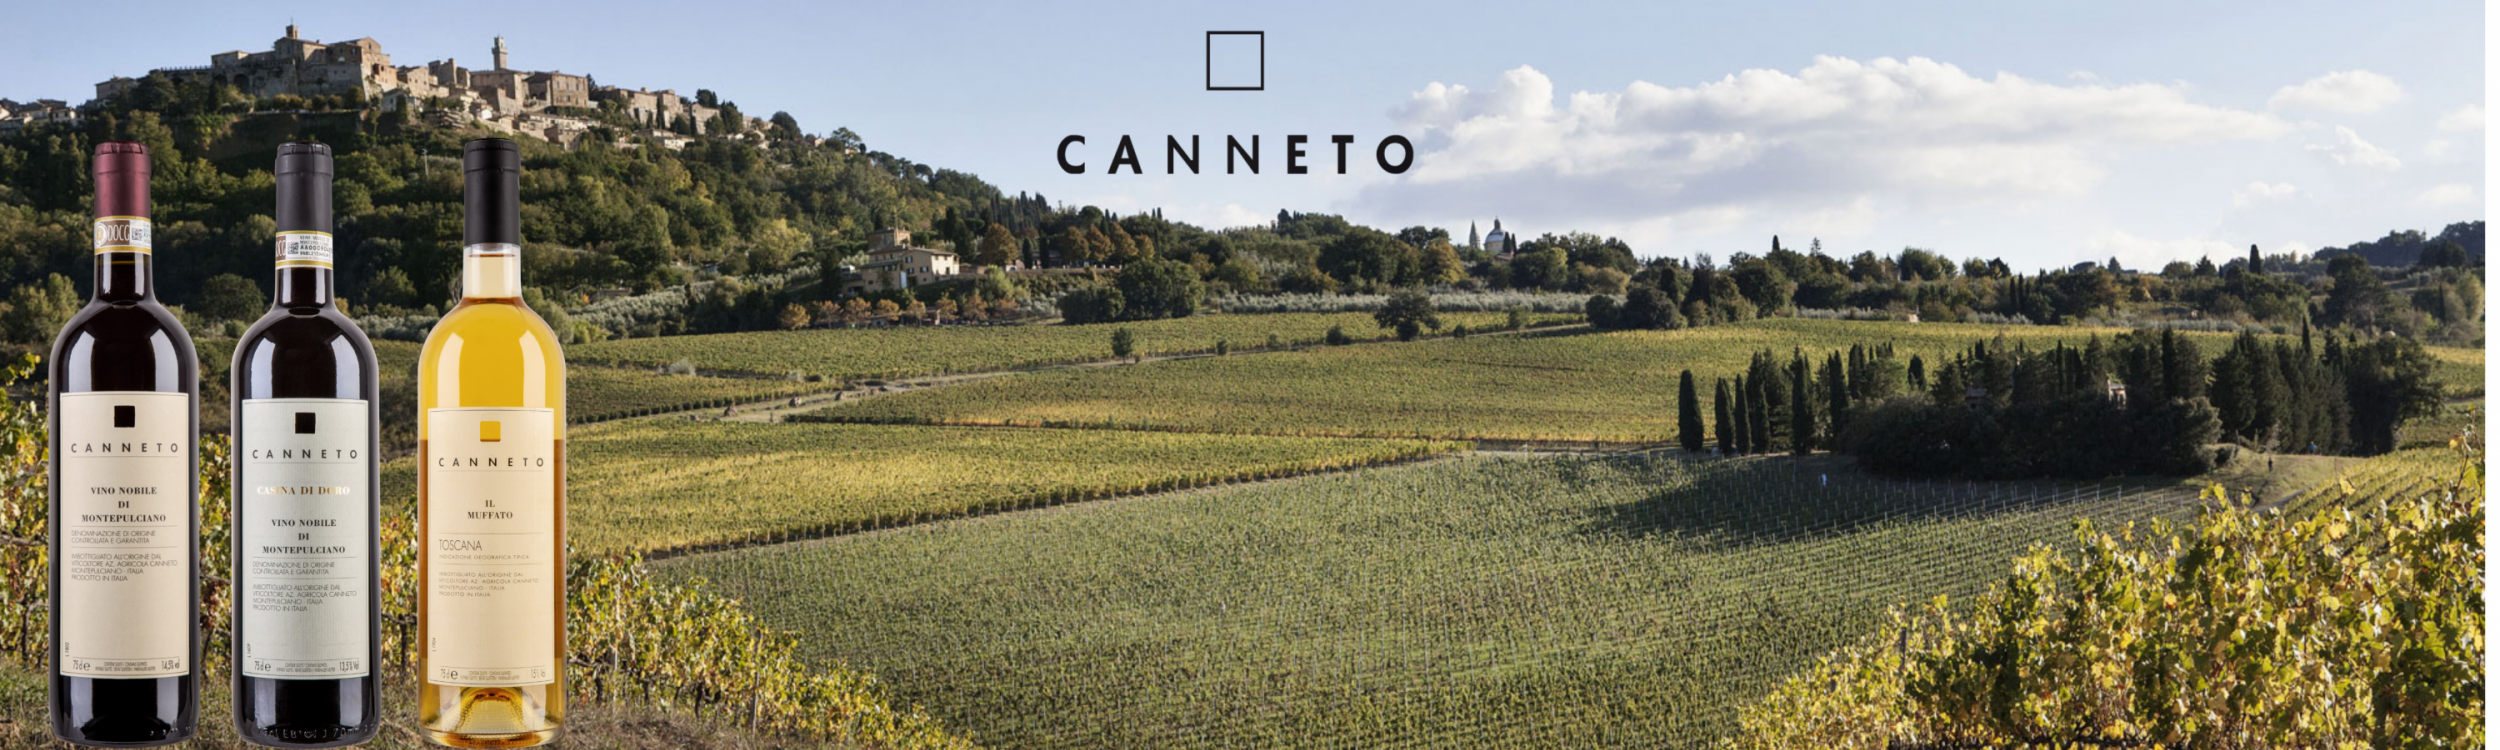 Canneto  - Dalle migliori vigne di Montepulciano